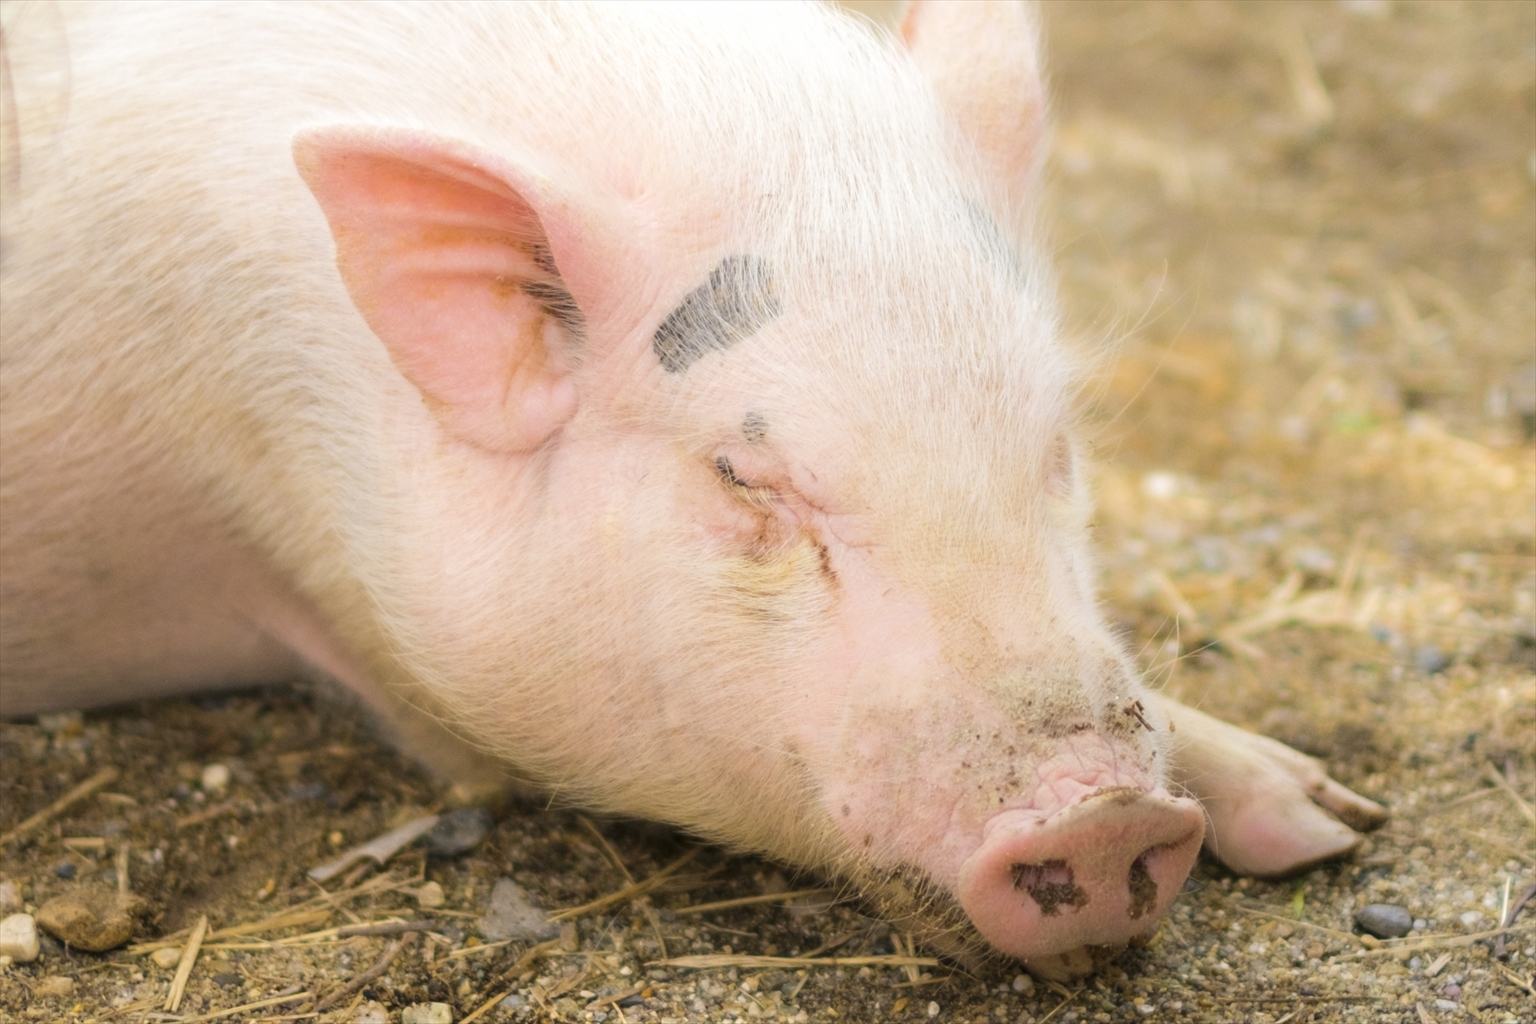 【輸入停止解除】チェコからの豚肉等について20210830